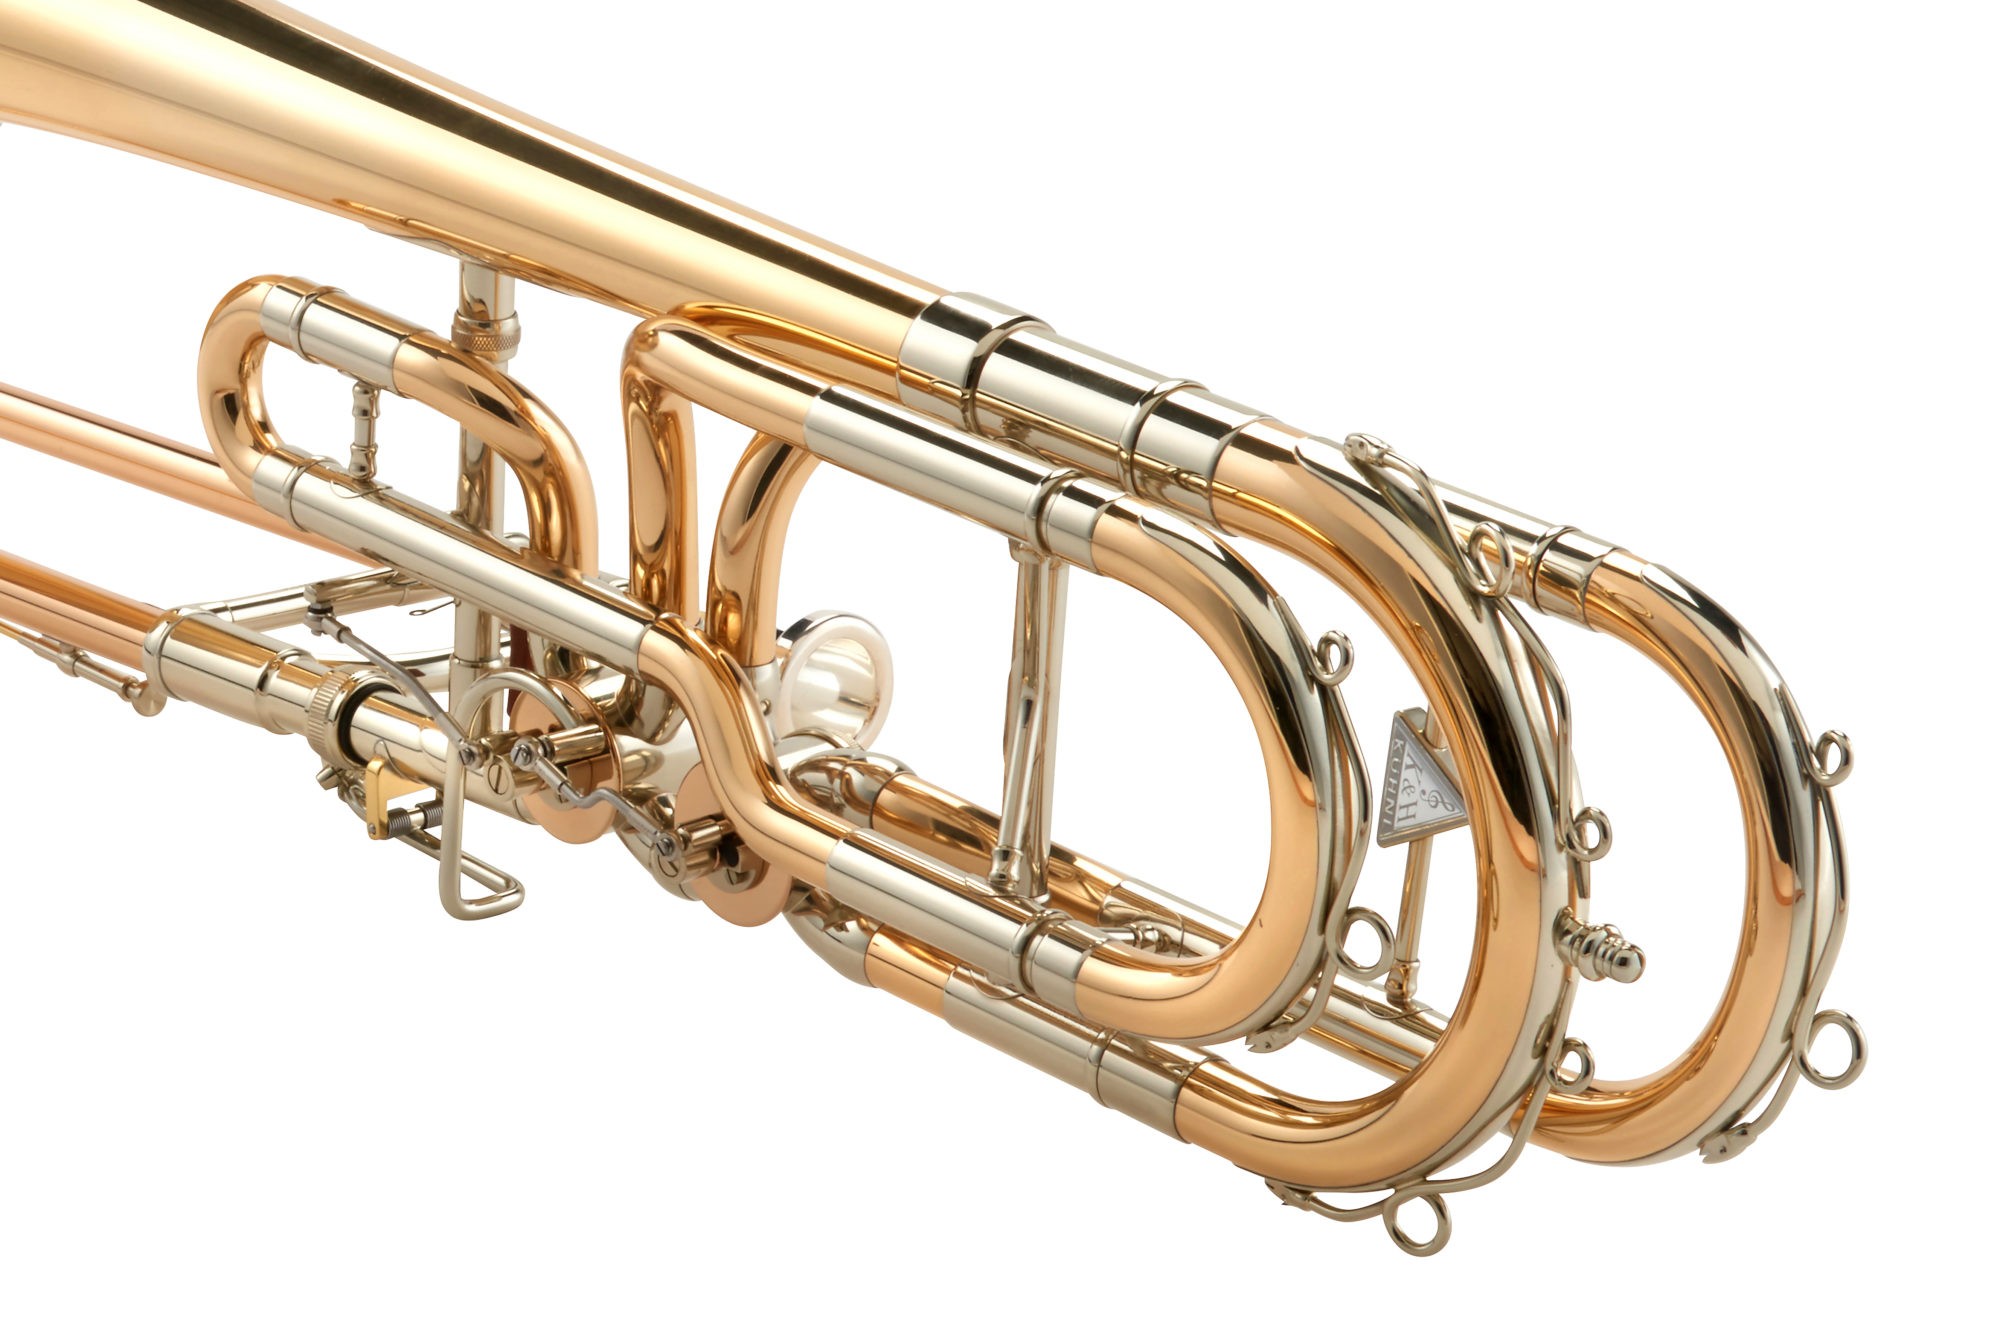 Chaveiro Trombones Kick Brass!